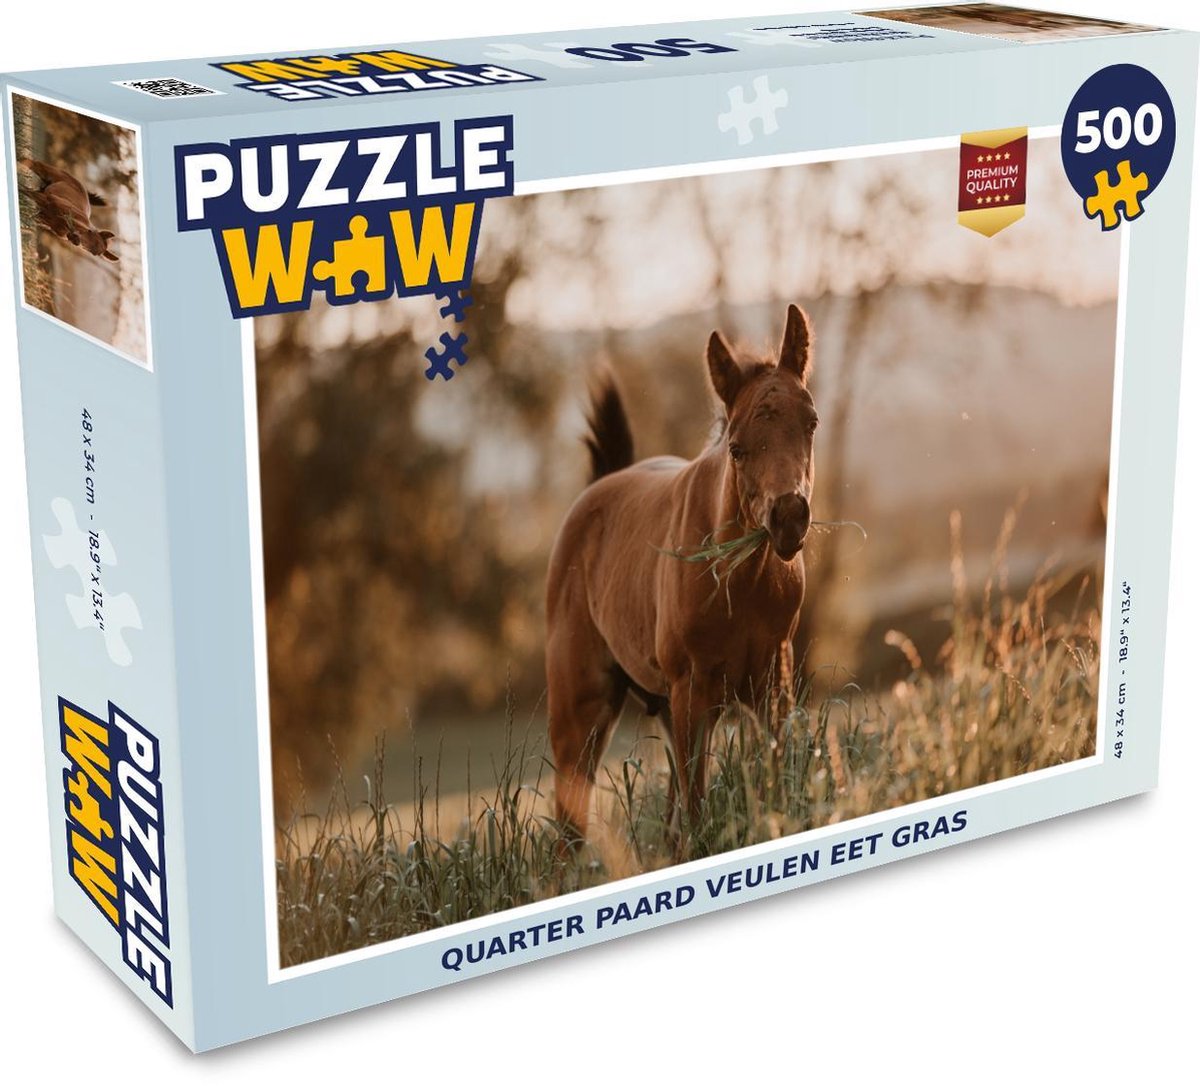 Afbeelding van product Puzzel 500 stukjes Quarter Paard - Quarter paard veulen eet gras puzzel 500 stukjes - PuzzleWow heeft +100000 puzzels